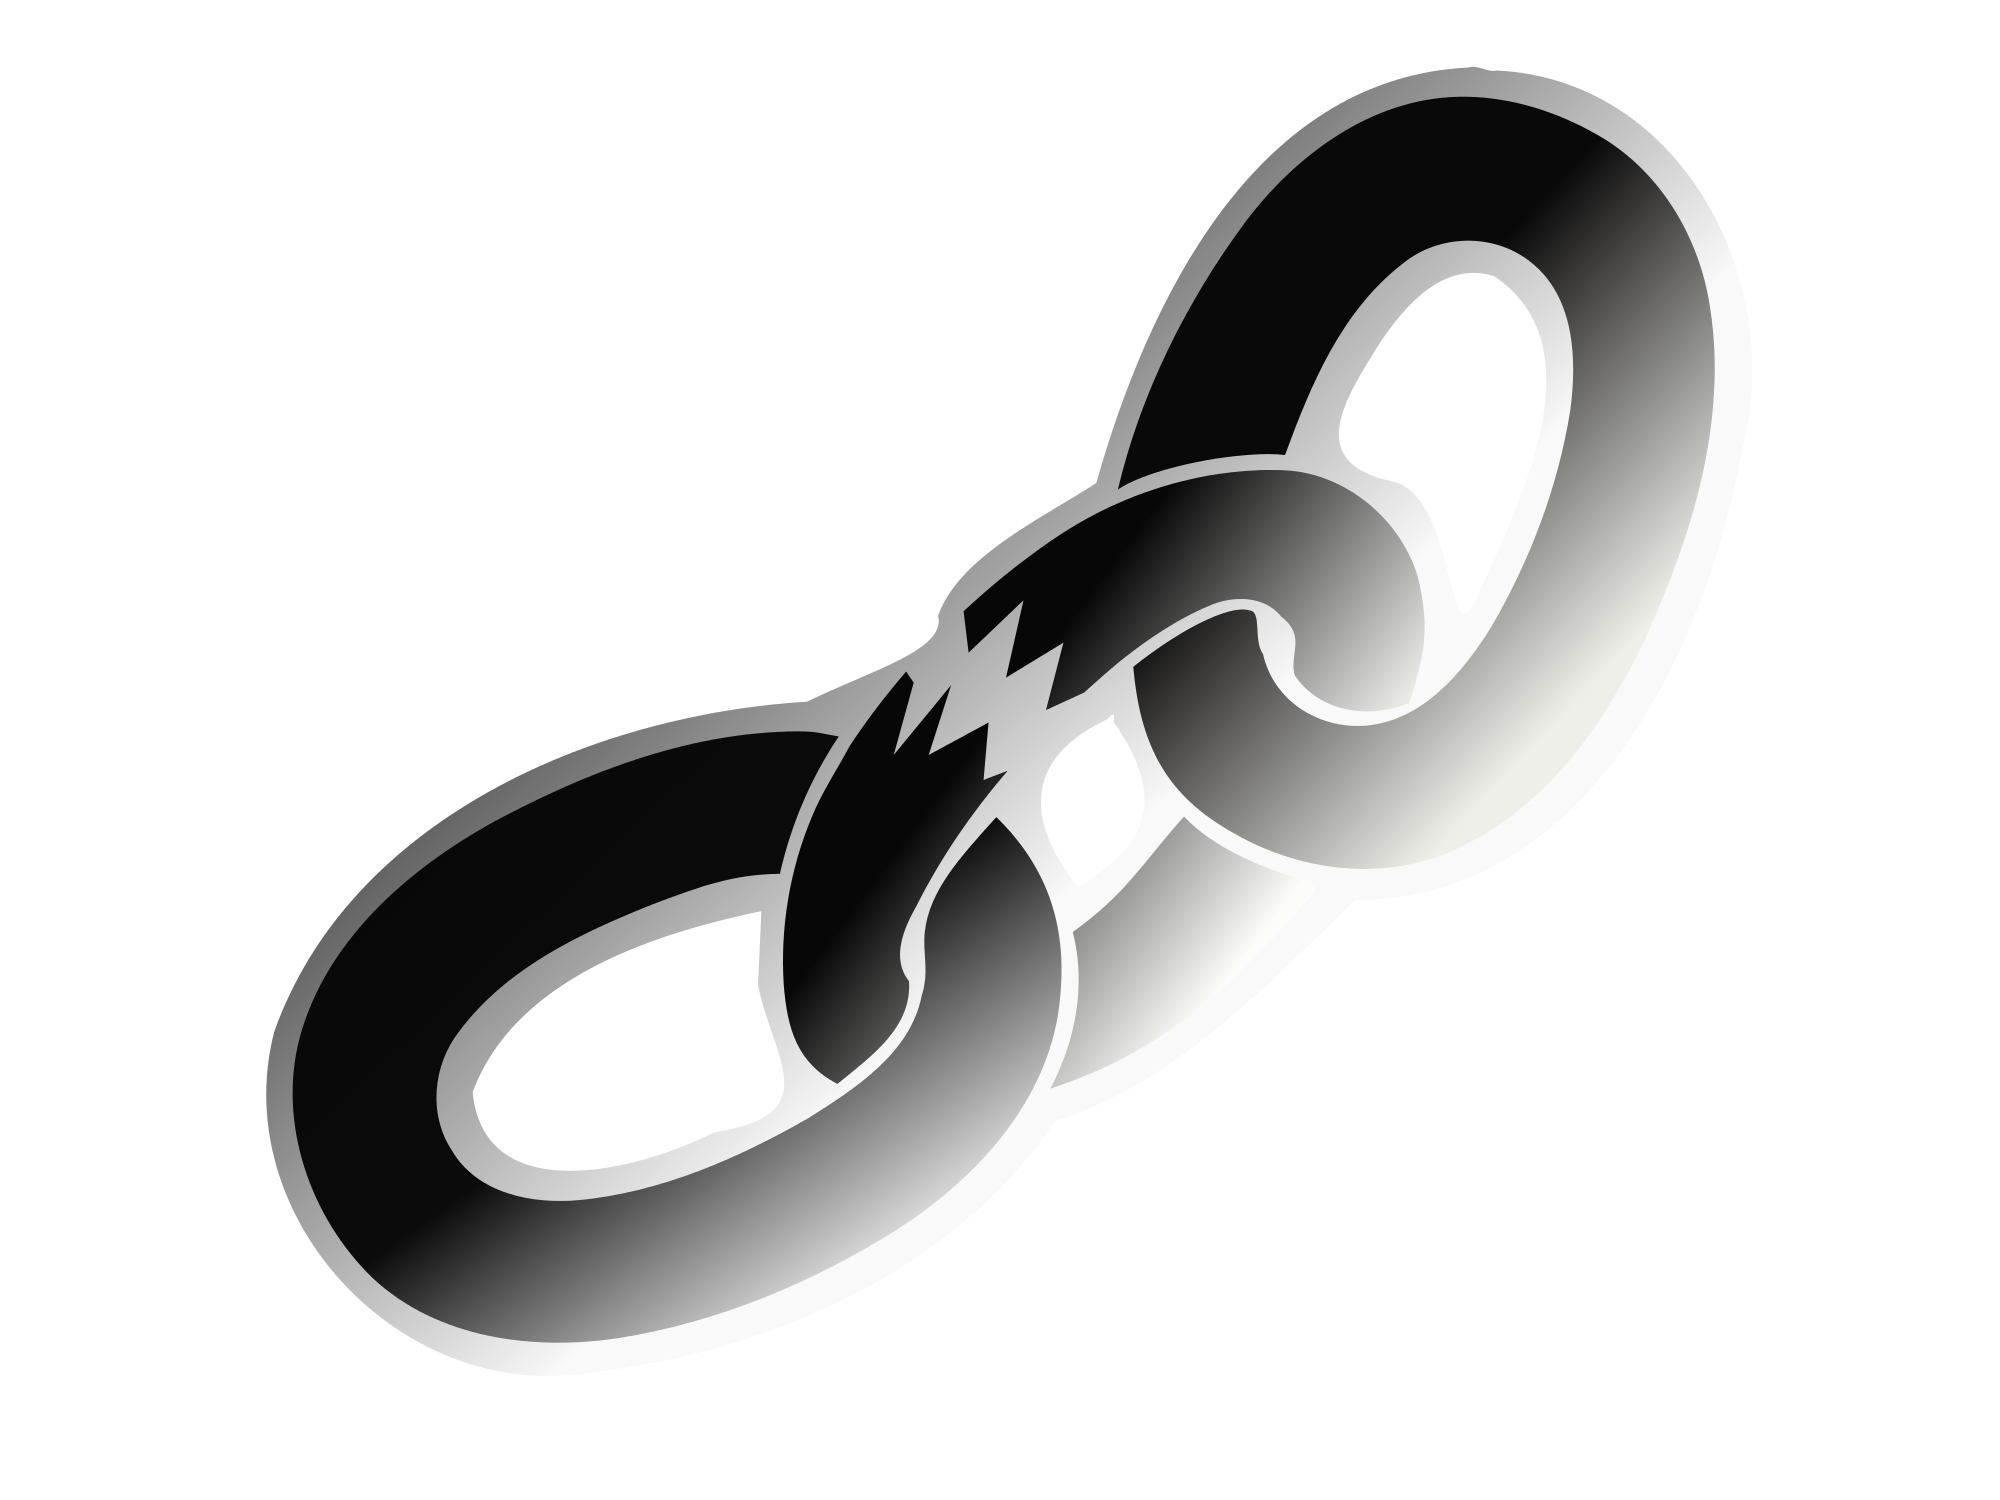 Chain clipart broken chain. File symbol svg wikimedia